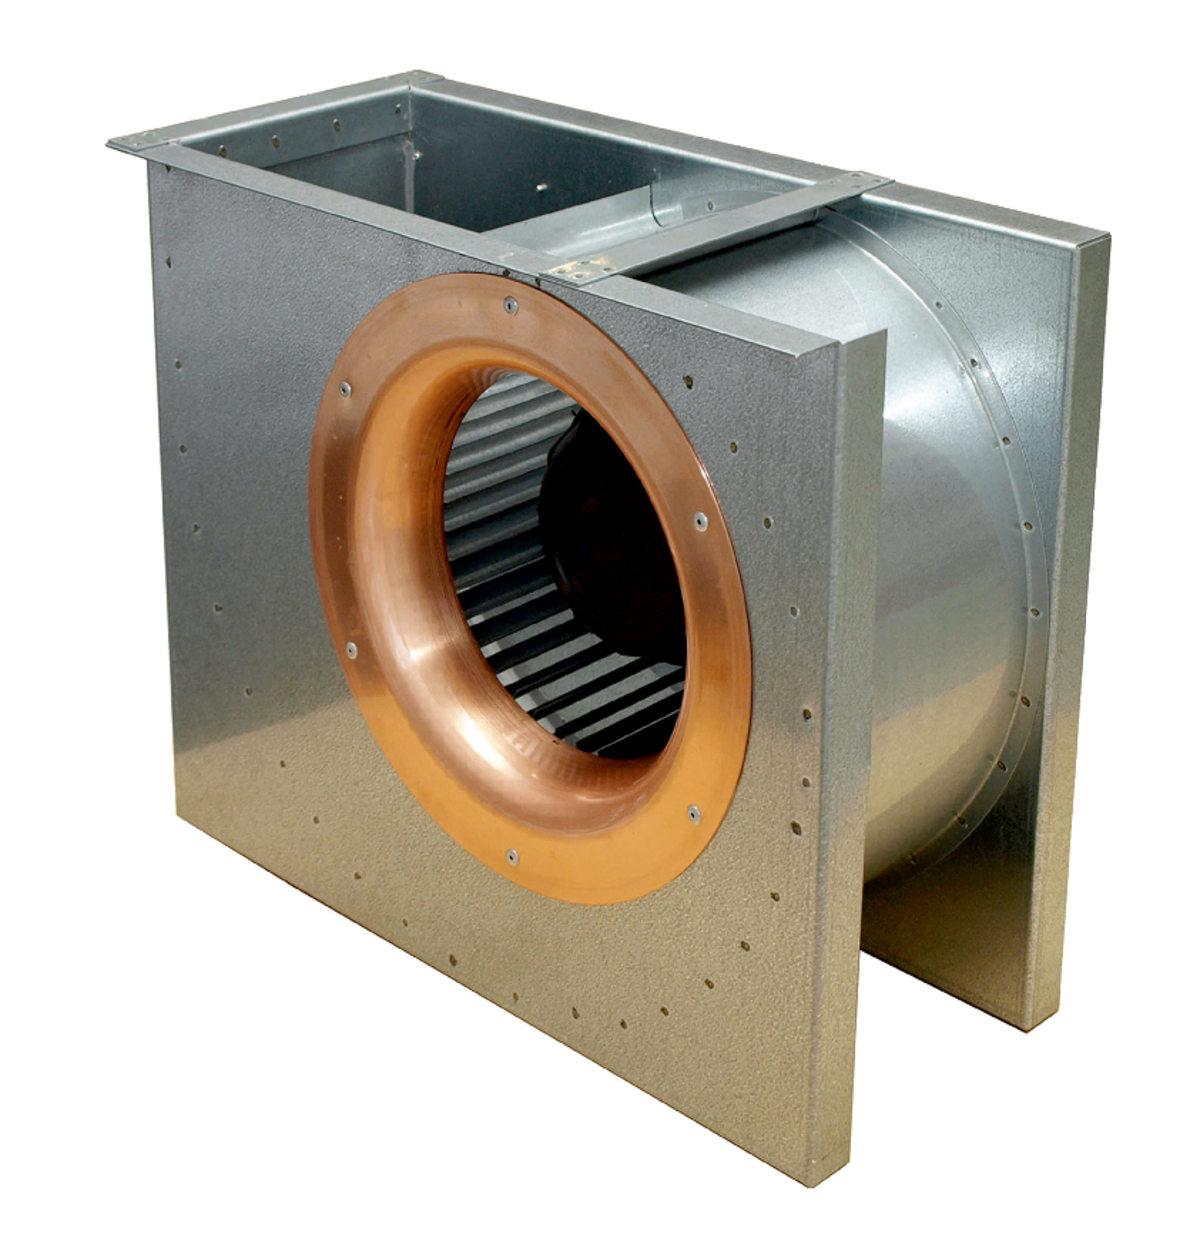 DKEX - Ventilatori centrifughi - Ventilatori - Prodotti - Systemair